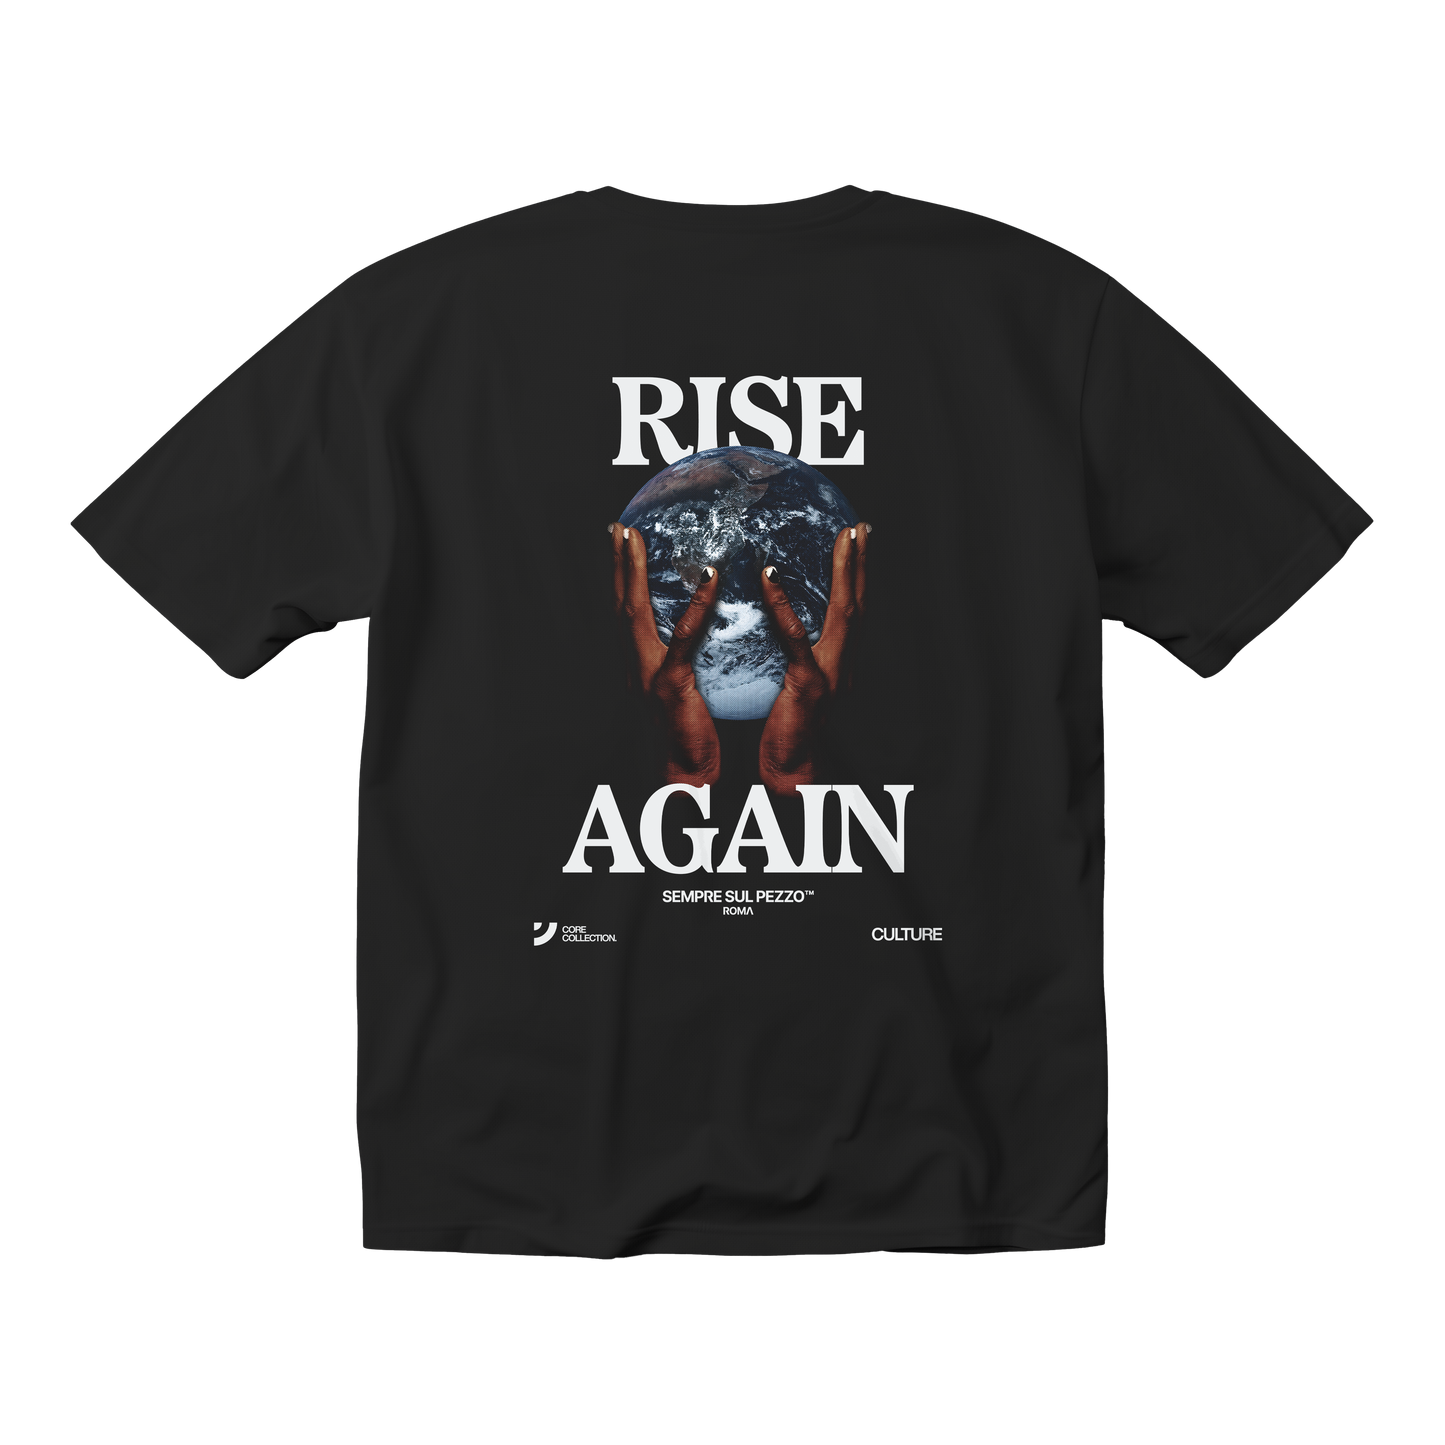 "Rise Again" Graphic Tee - Black